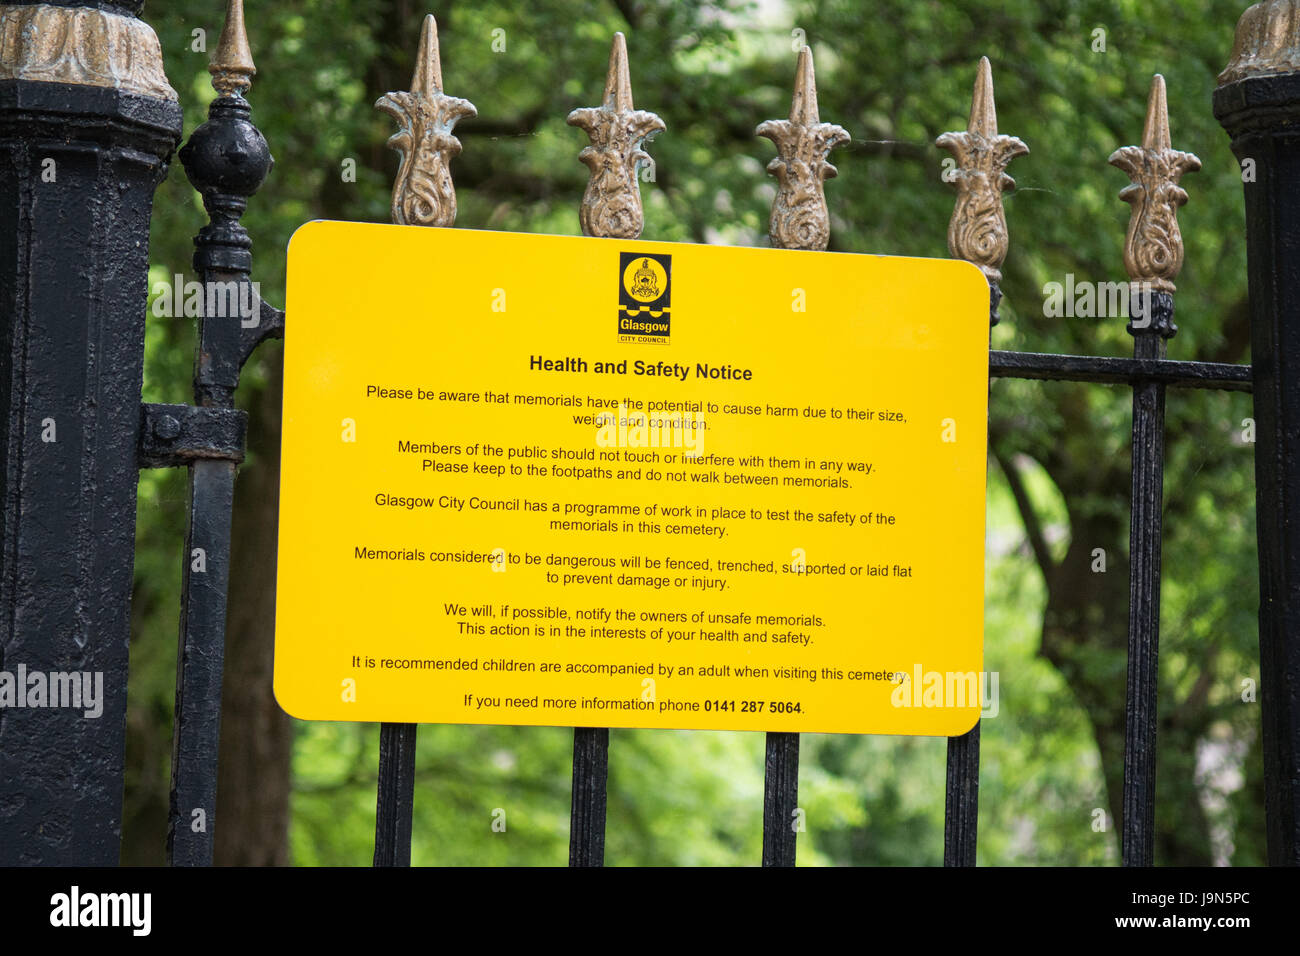 Necropoli di Glasgow avviso Avviso sulla salute e sulla sicurezza circa i pericoli di caduta insicura memoriali lapidi. Foto Stock